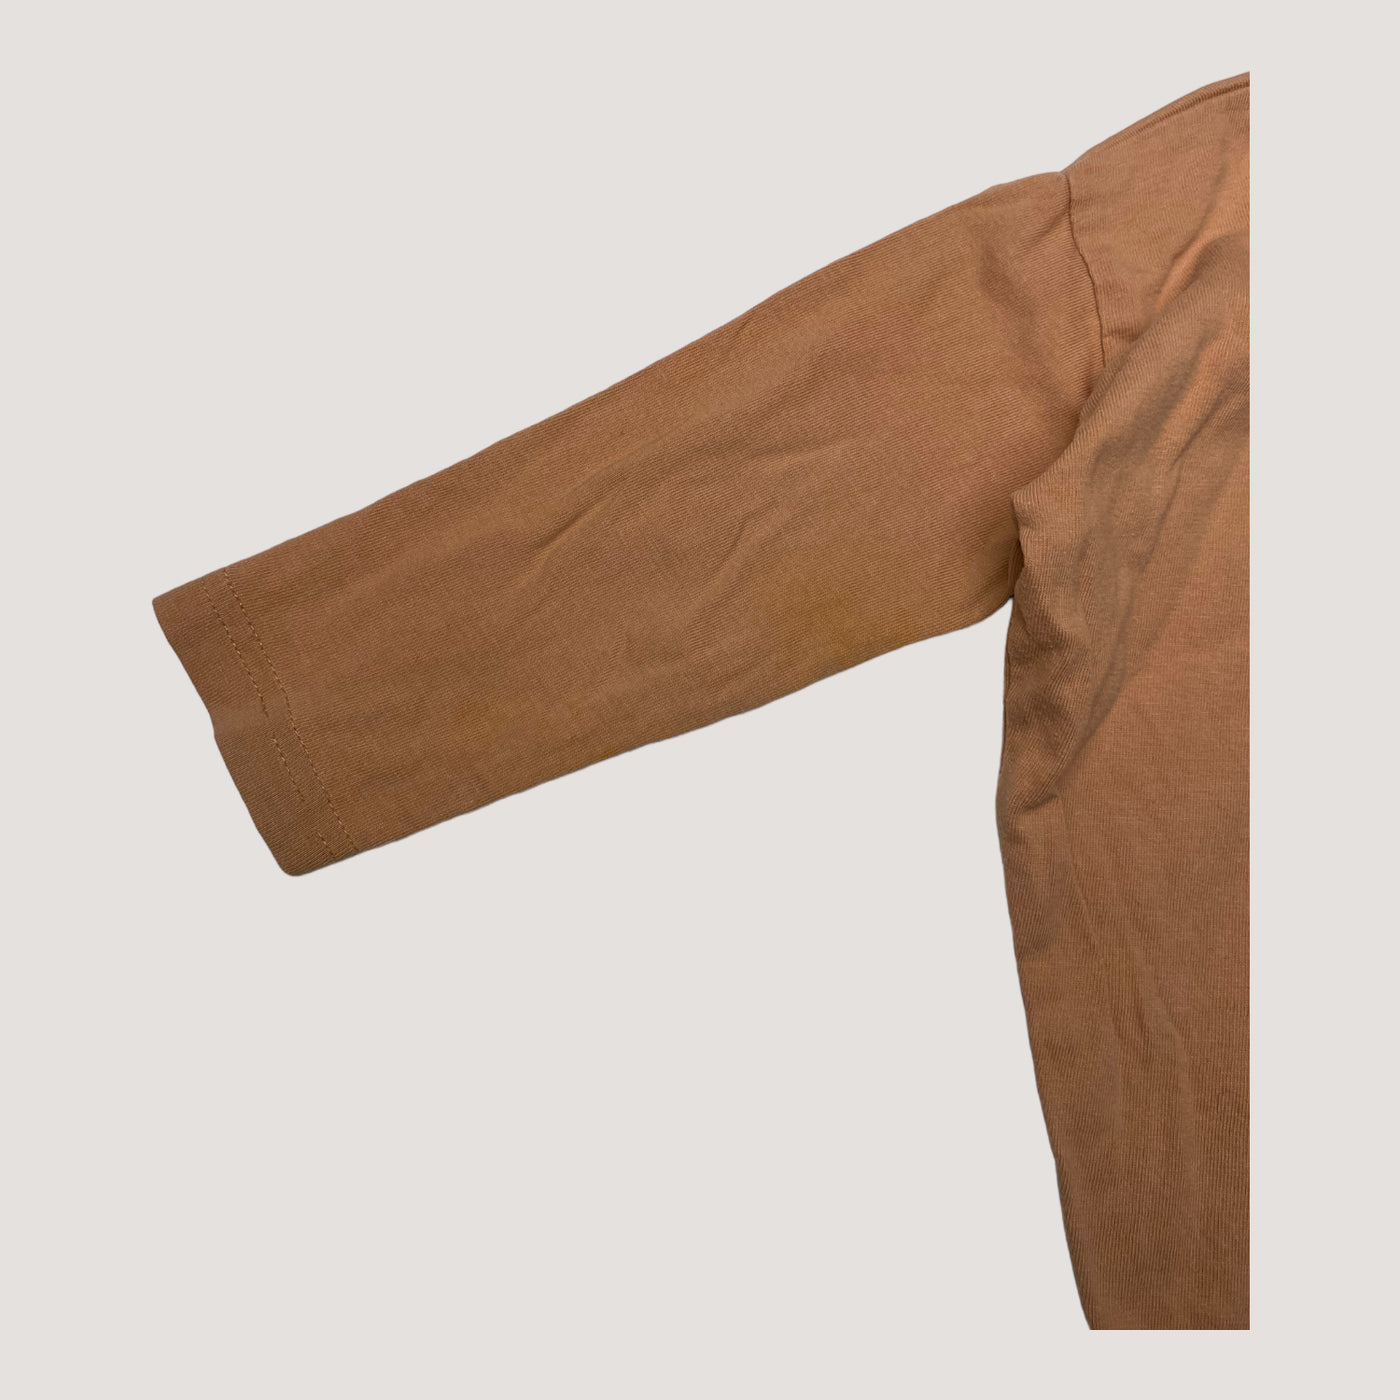 Mainio shirt, caramel | 98/104cm